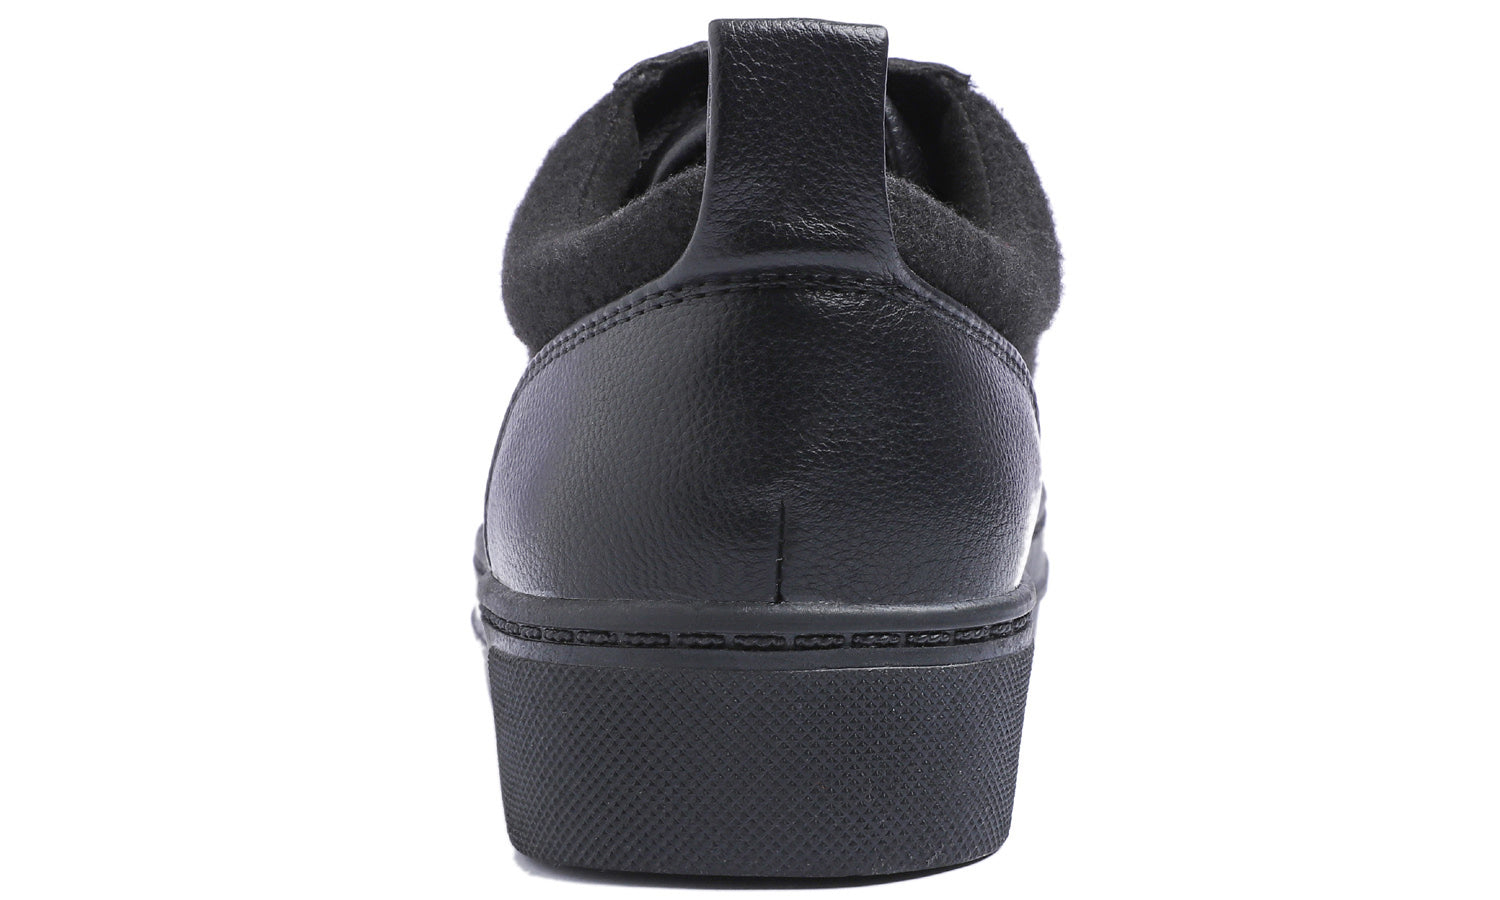 Feversole Women's Winter Vegan Leather Lightweight Platform Lace-Up Street Sneakers Black Faux Woolen PU